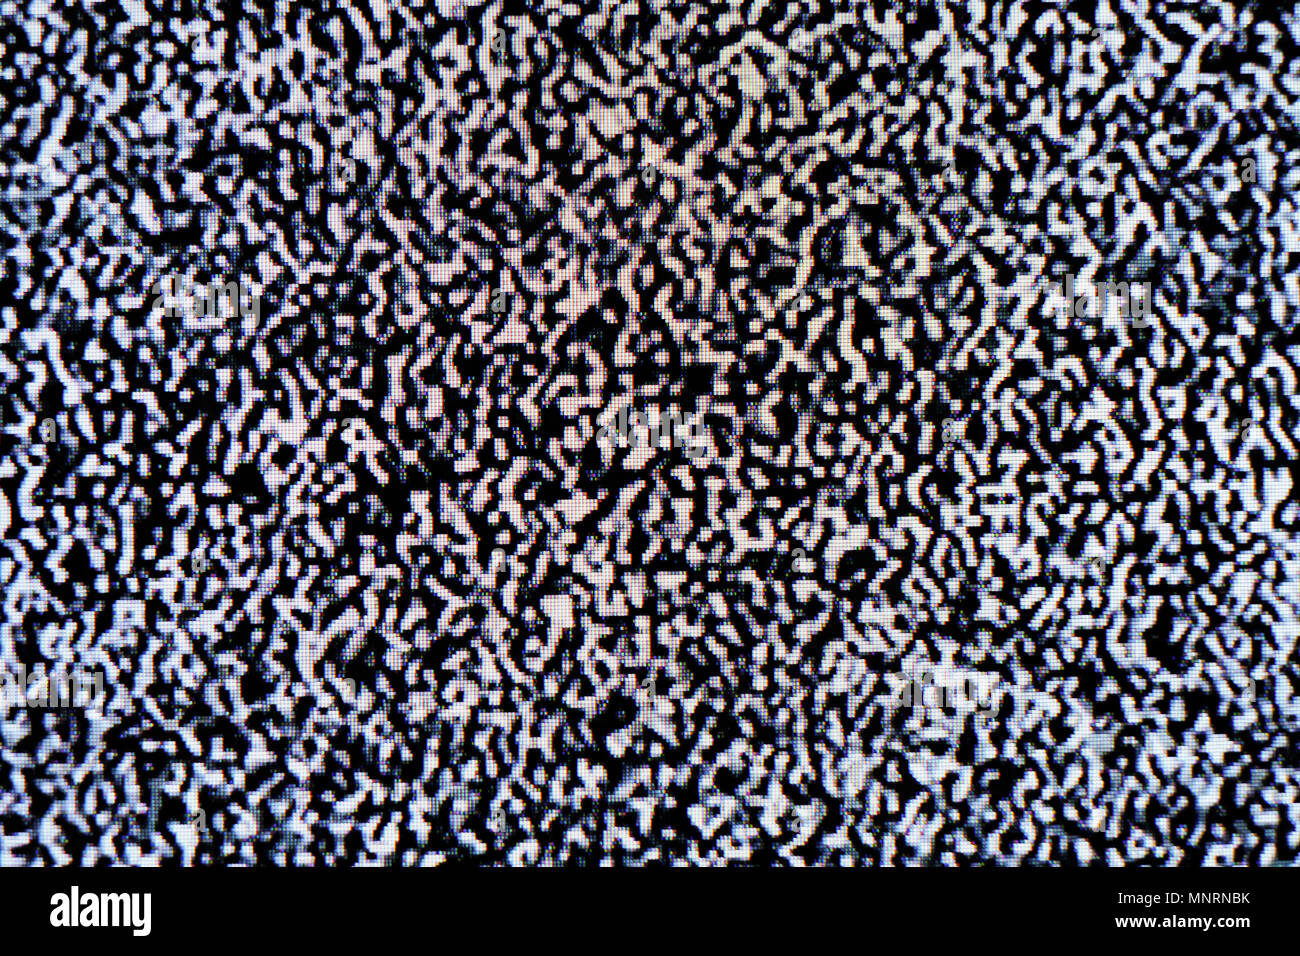 Pixelated Fernsehbildschirm mit statisches Rauschen durch schlechten Empfang oder kein Signal verursacht. Zusammenfassung Hintergrund. Stockfoto